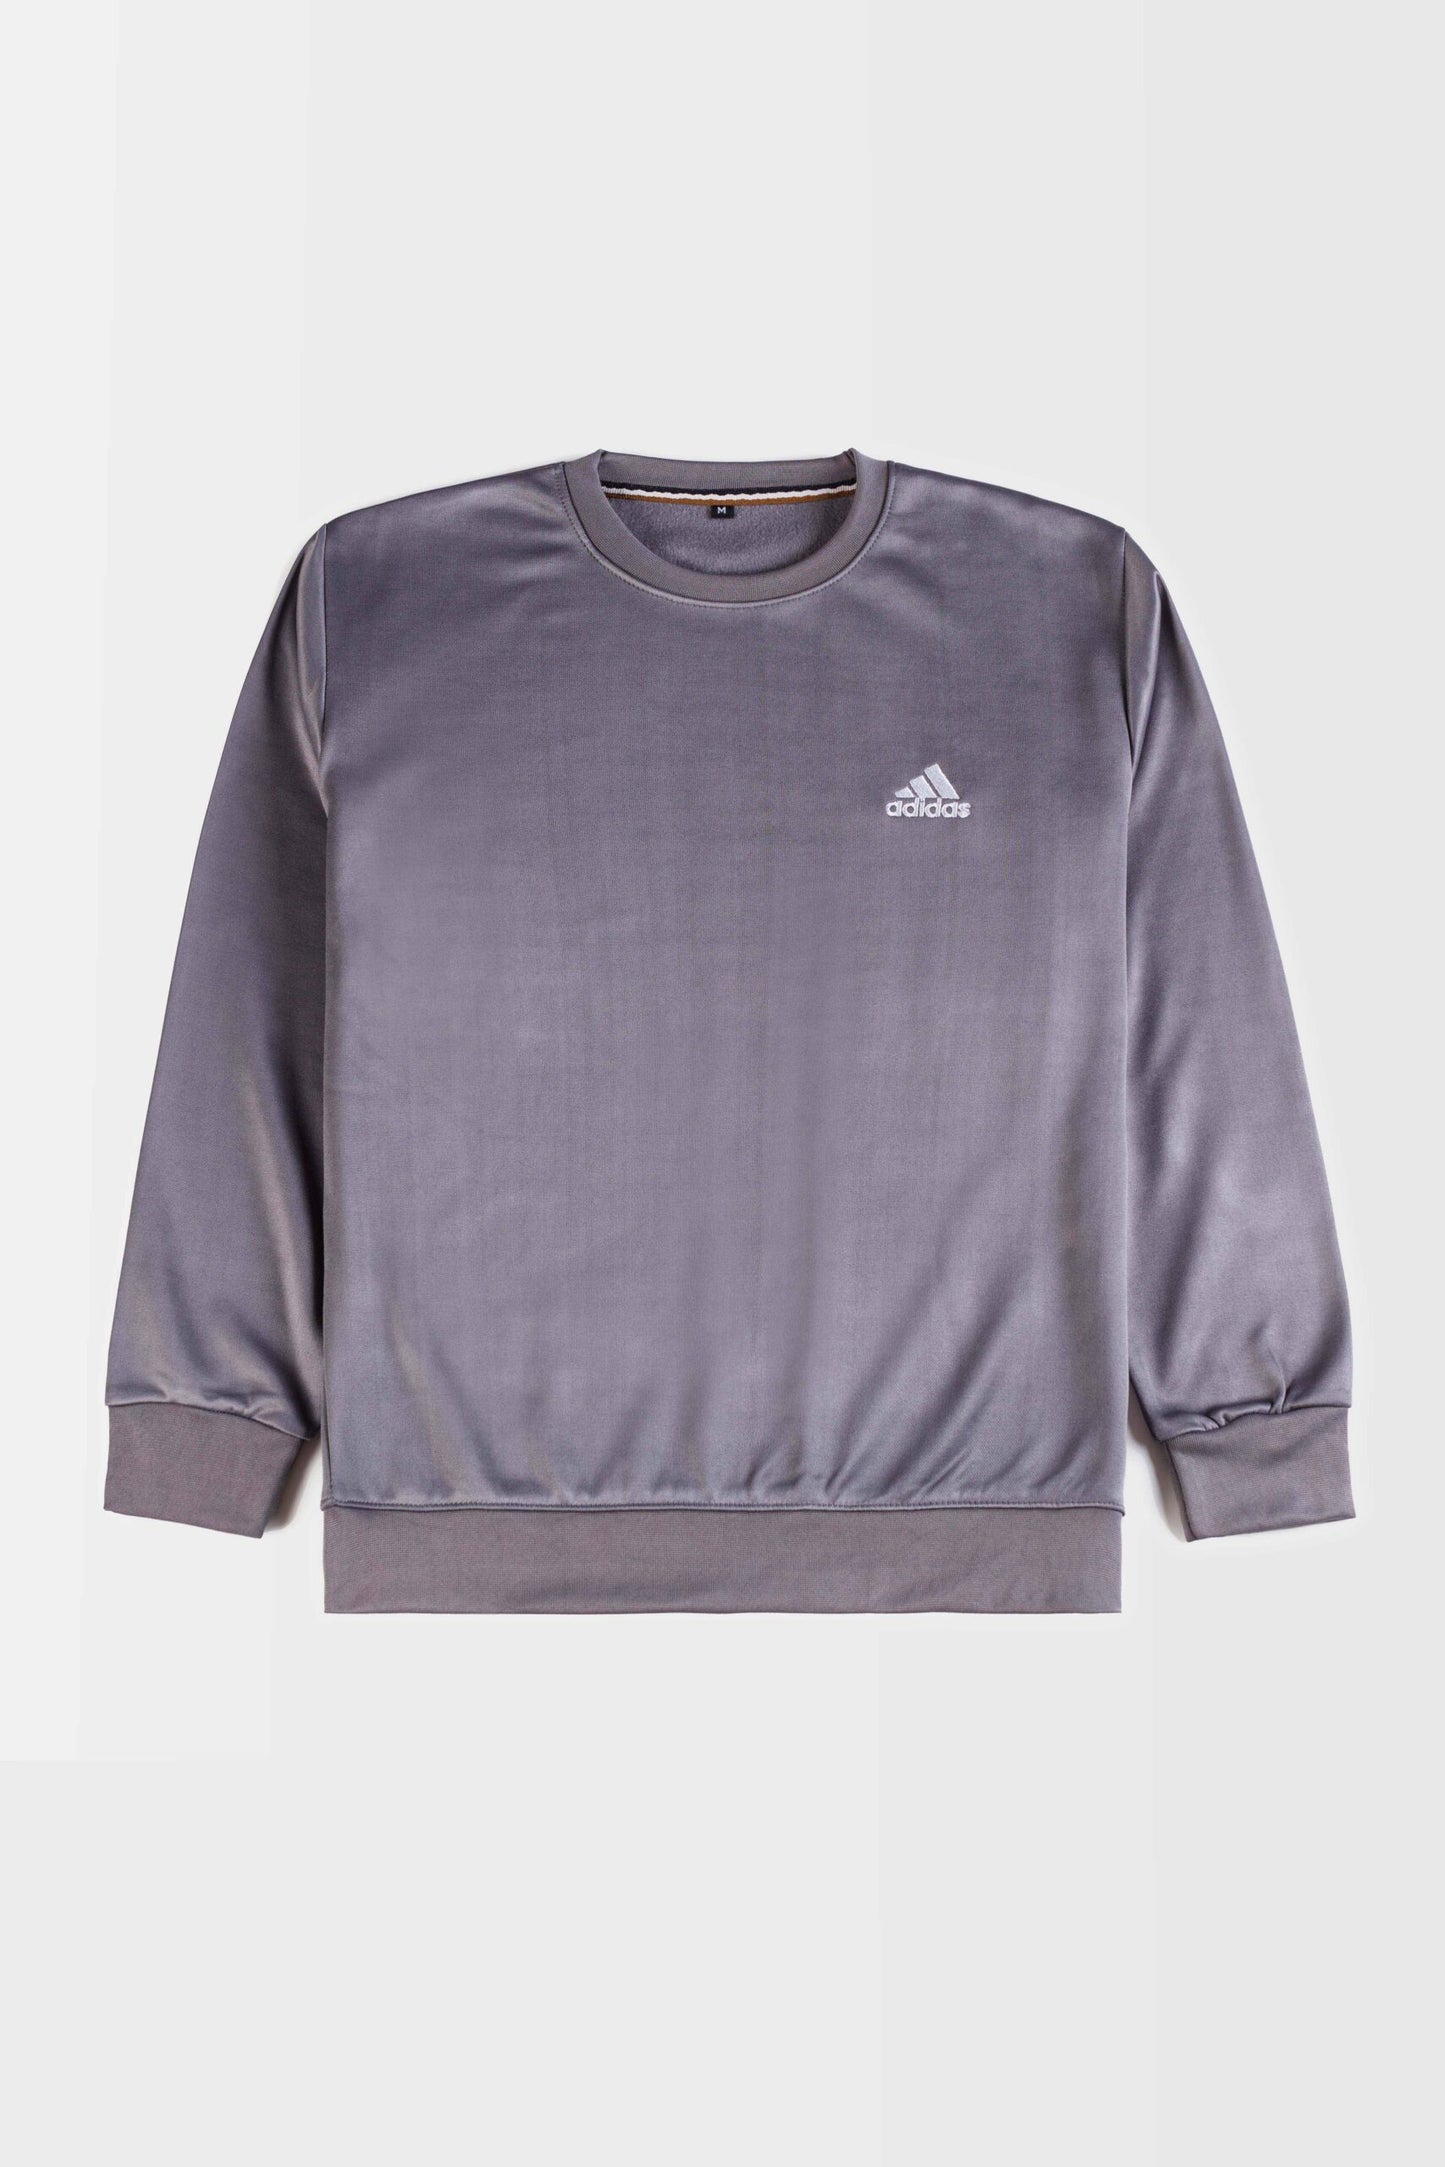 Adidas Premium Fleece Sweatshirt – Grey